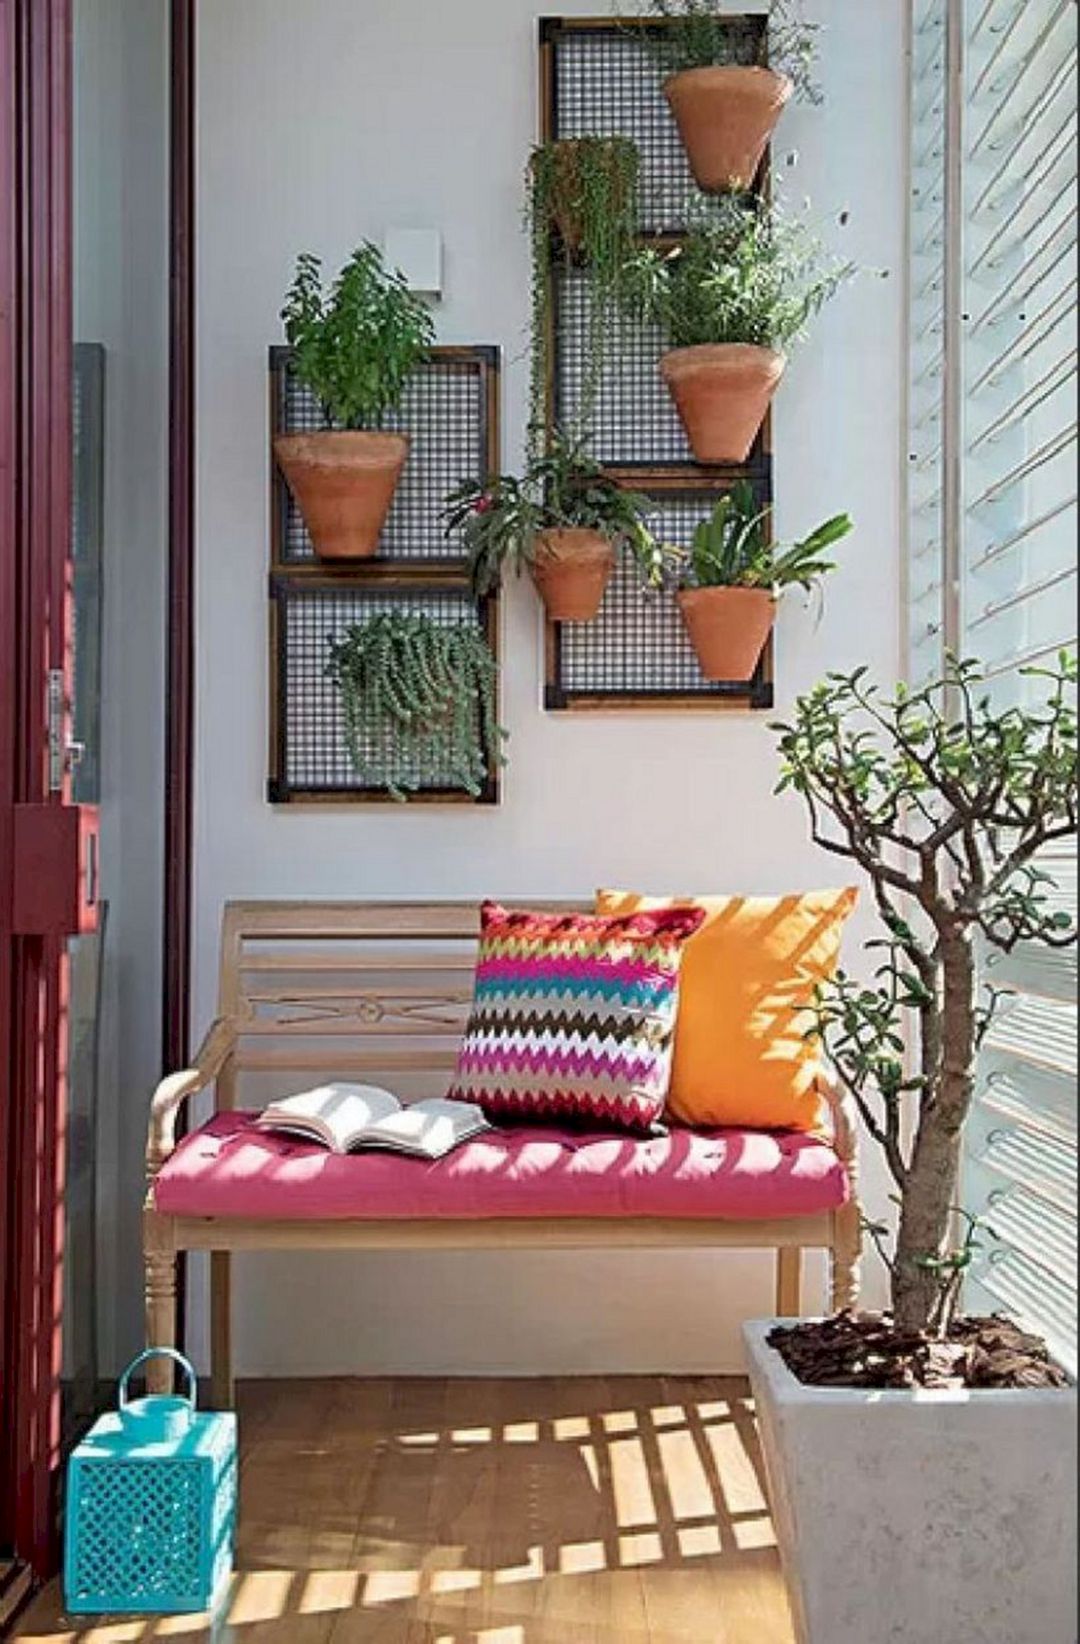 Bức tường sinh động với những chậu cây bằng gốm được trồng thẳng đứng, giúp giải phóng mặt sàn, nhường vị trí cho chiếc ghế gỗ với đệm màu hồng và gối tựa rực rỡ.